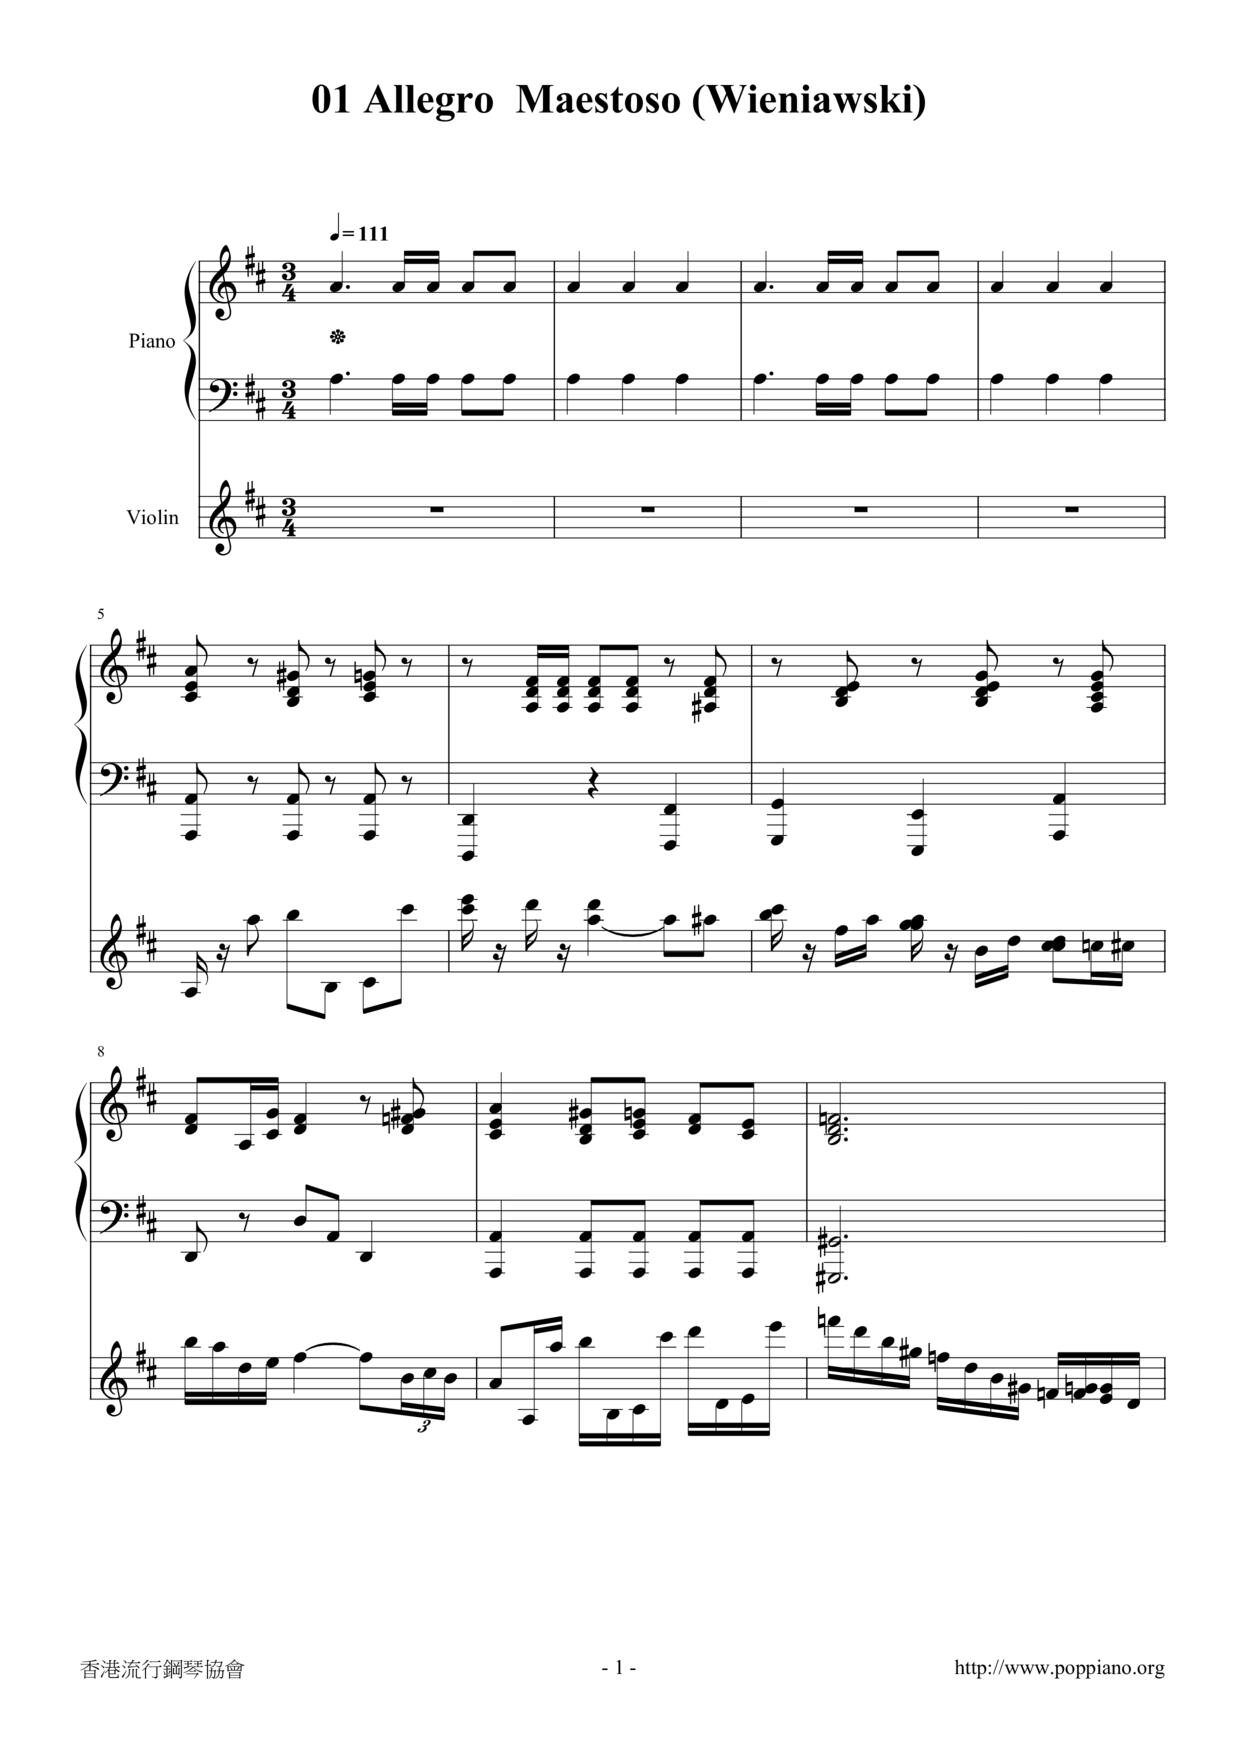 Cello Sonata in E minor, Op. 26: Allegro maestosoピアノ譜